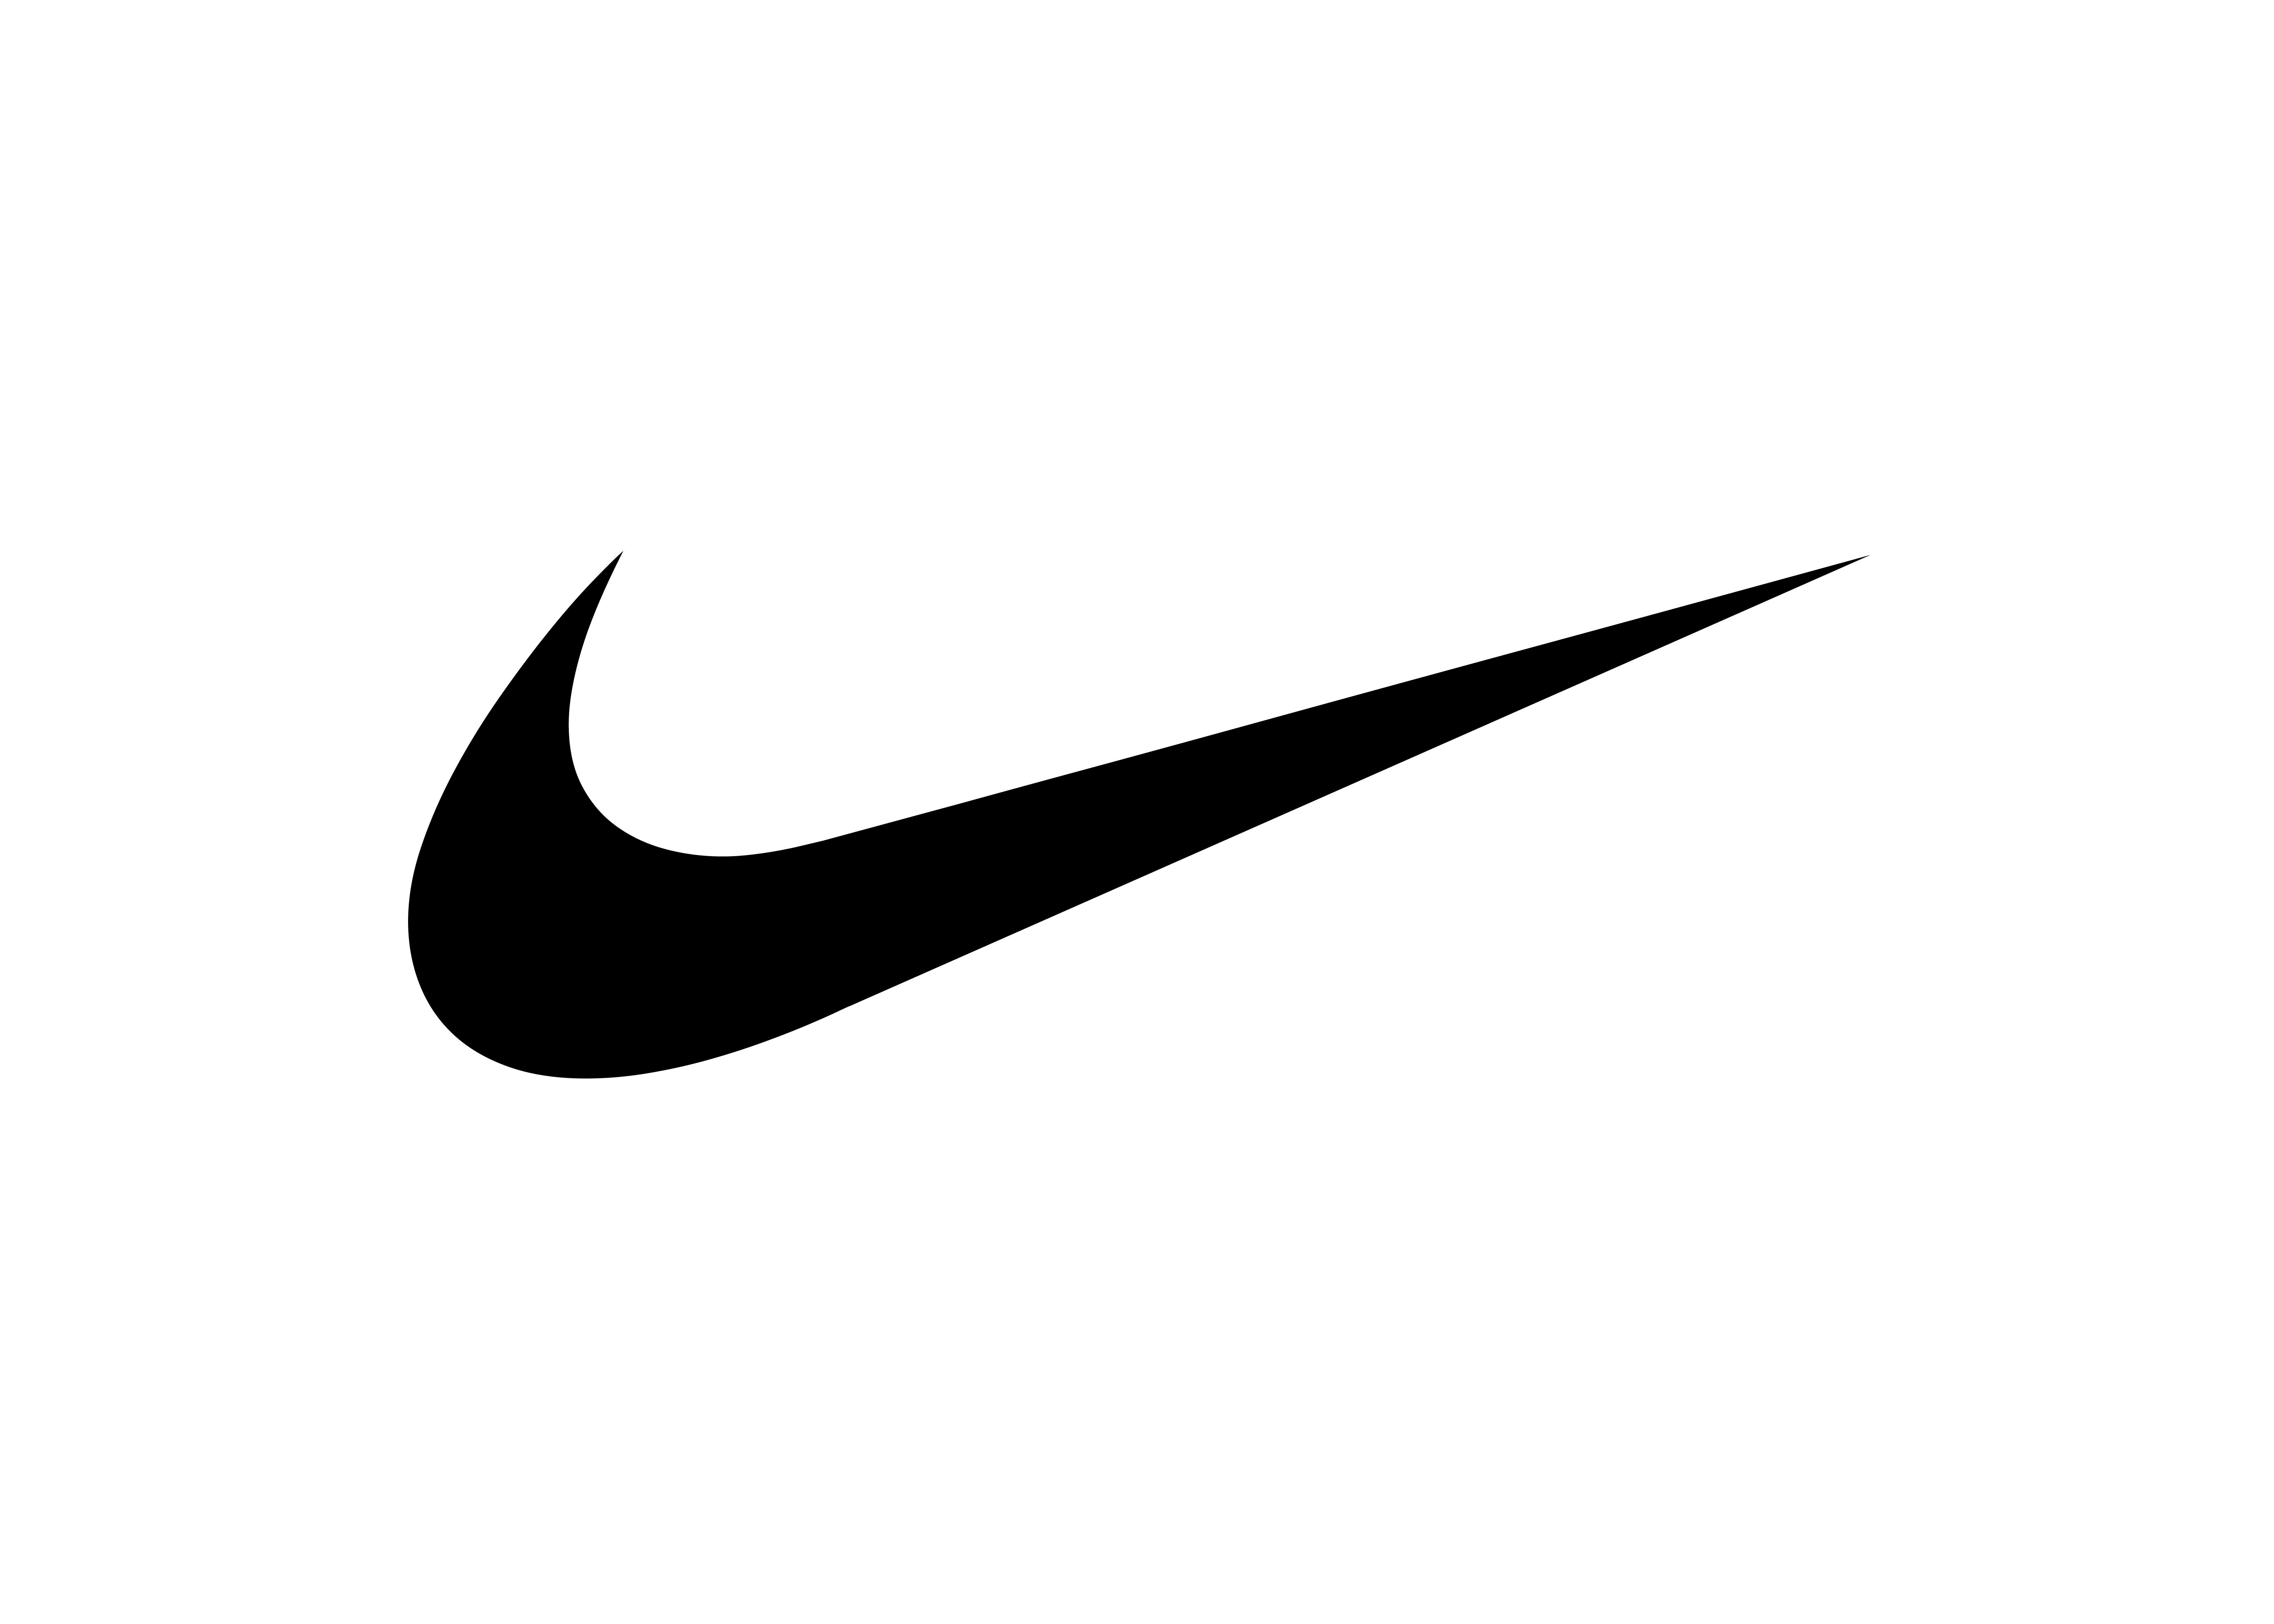 Camo Nike Logo - Nike Blazer Mid PRM “Camo Swoosh” | THE DROP